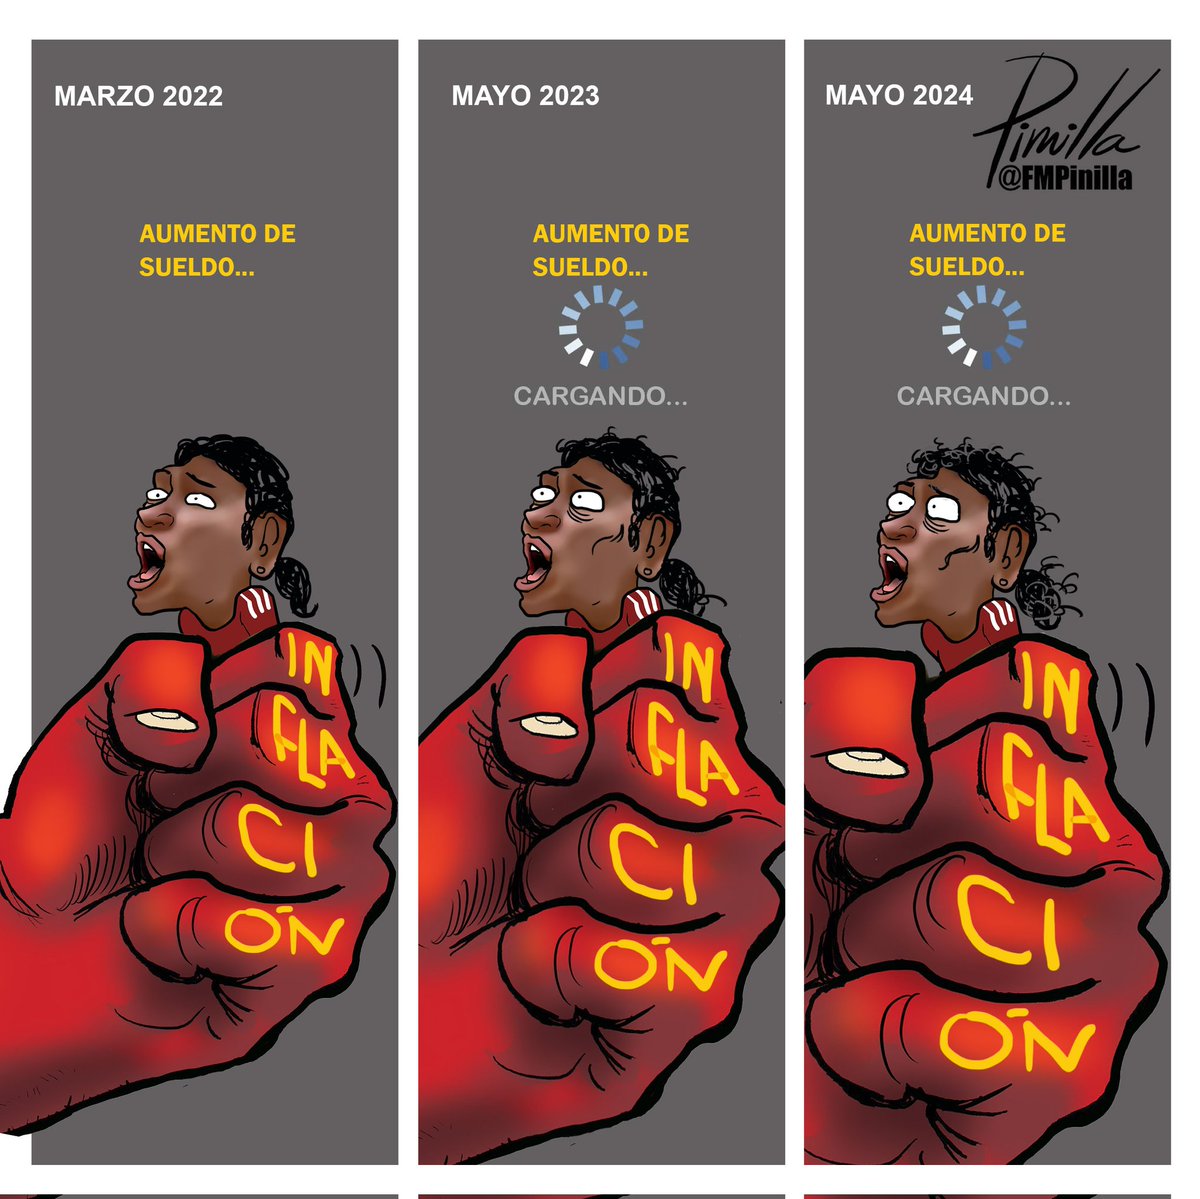 Esperando aumento de sueldo...
•
#BonoNoEsSalario 
•
#caricatura para @elnacionalweb 
•
#caricatura #cartoon #Venezuela #venezolanos #politicalcartoon